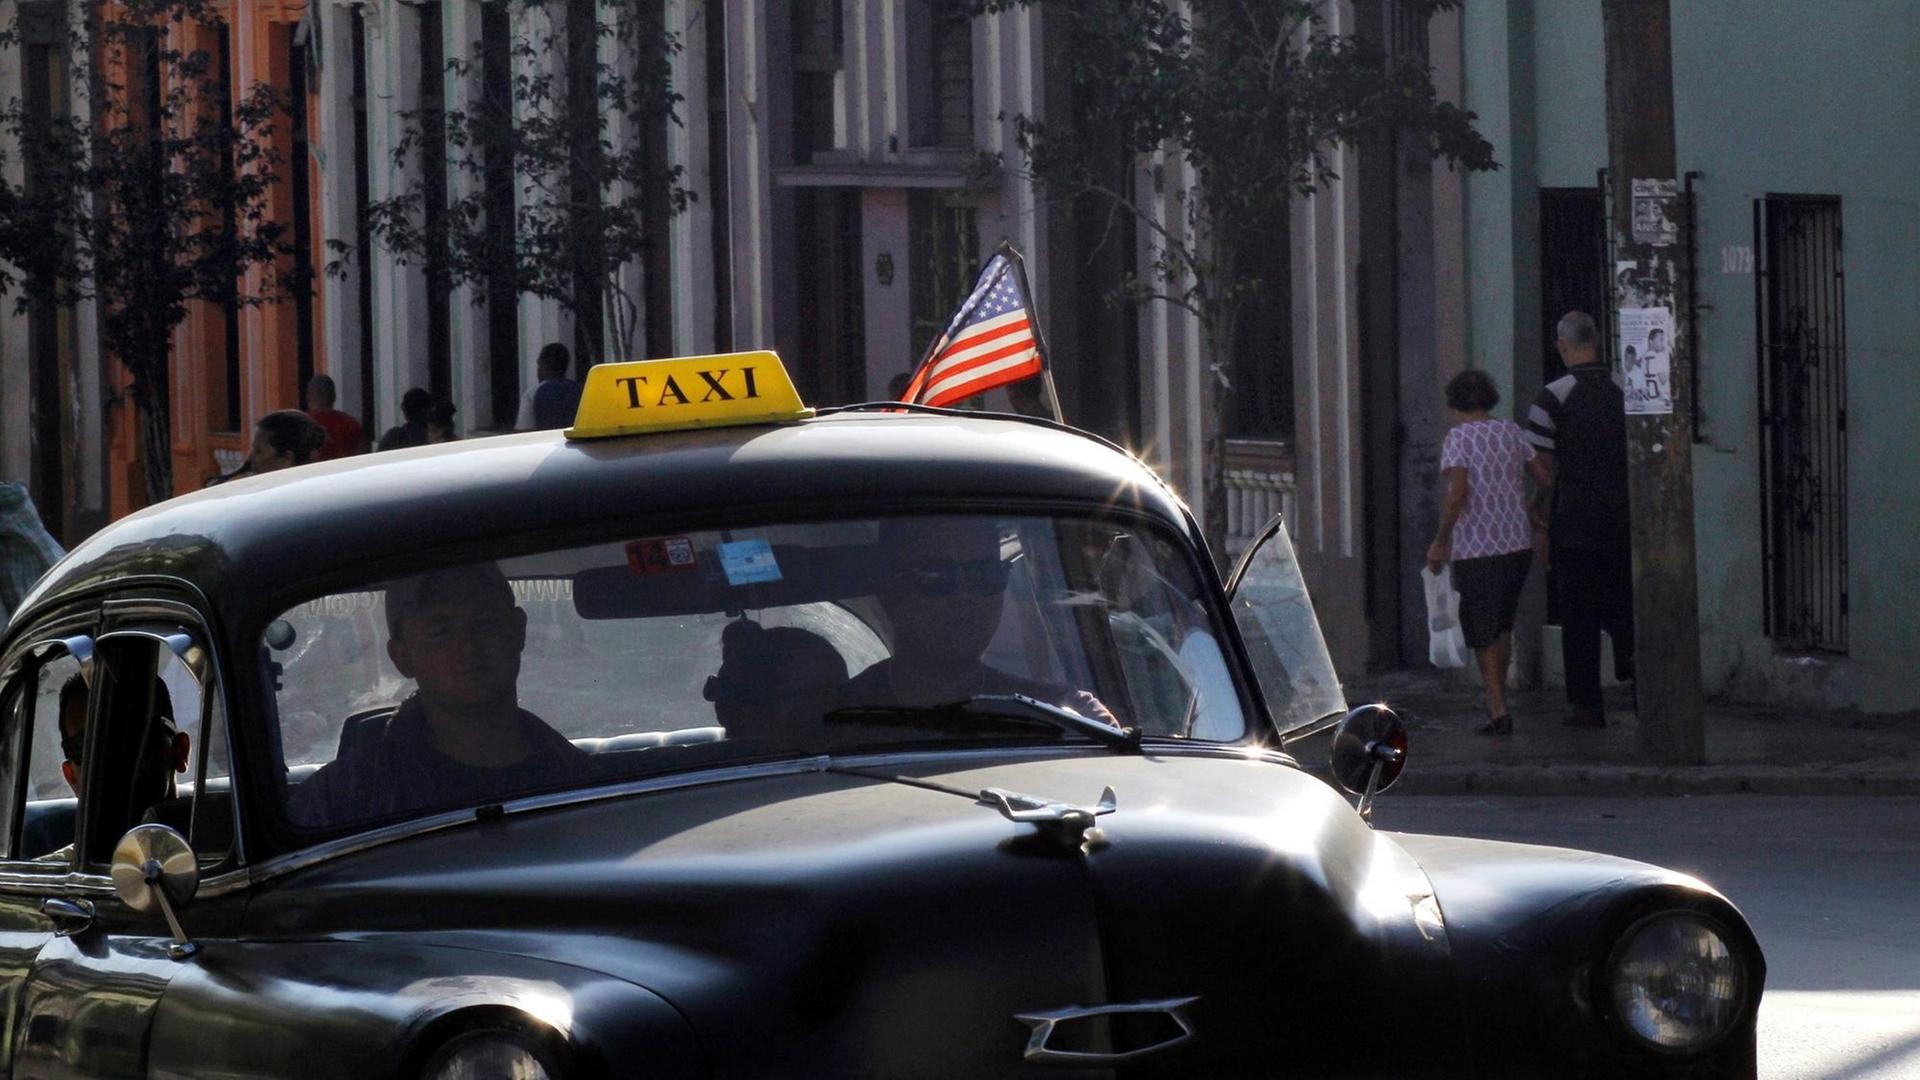 Ein altes kubanisches Taxi mit einer aufgesteckten USA-Fahne.